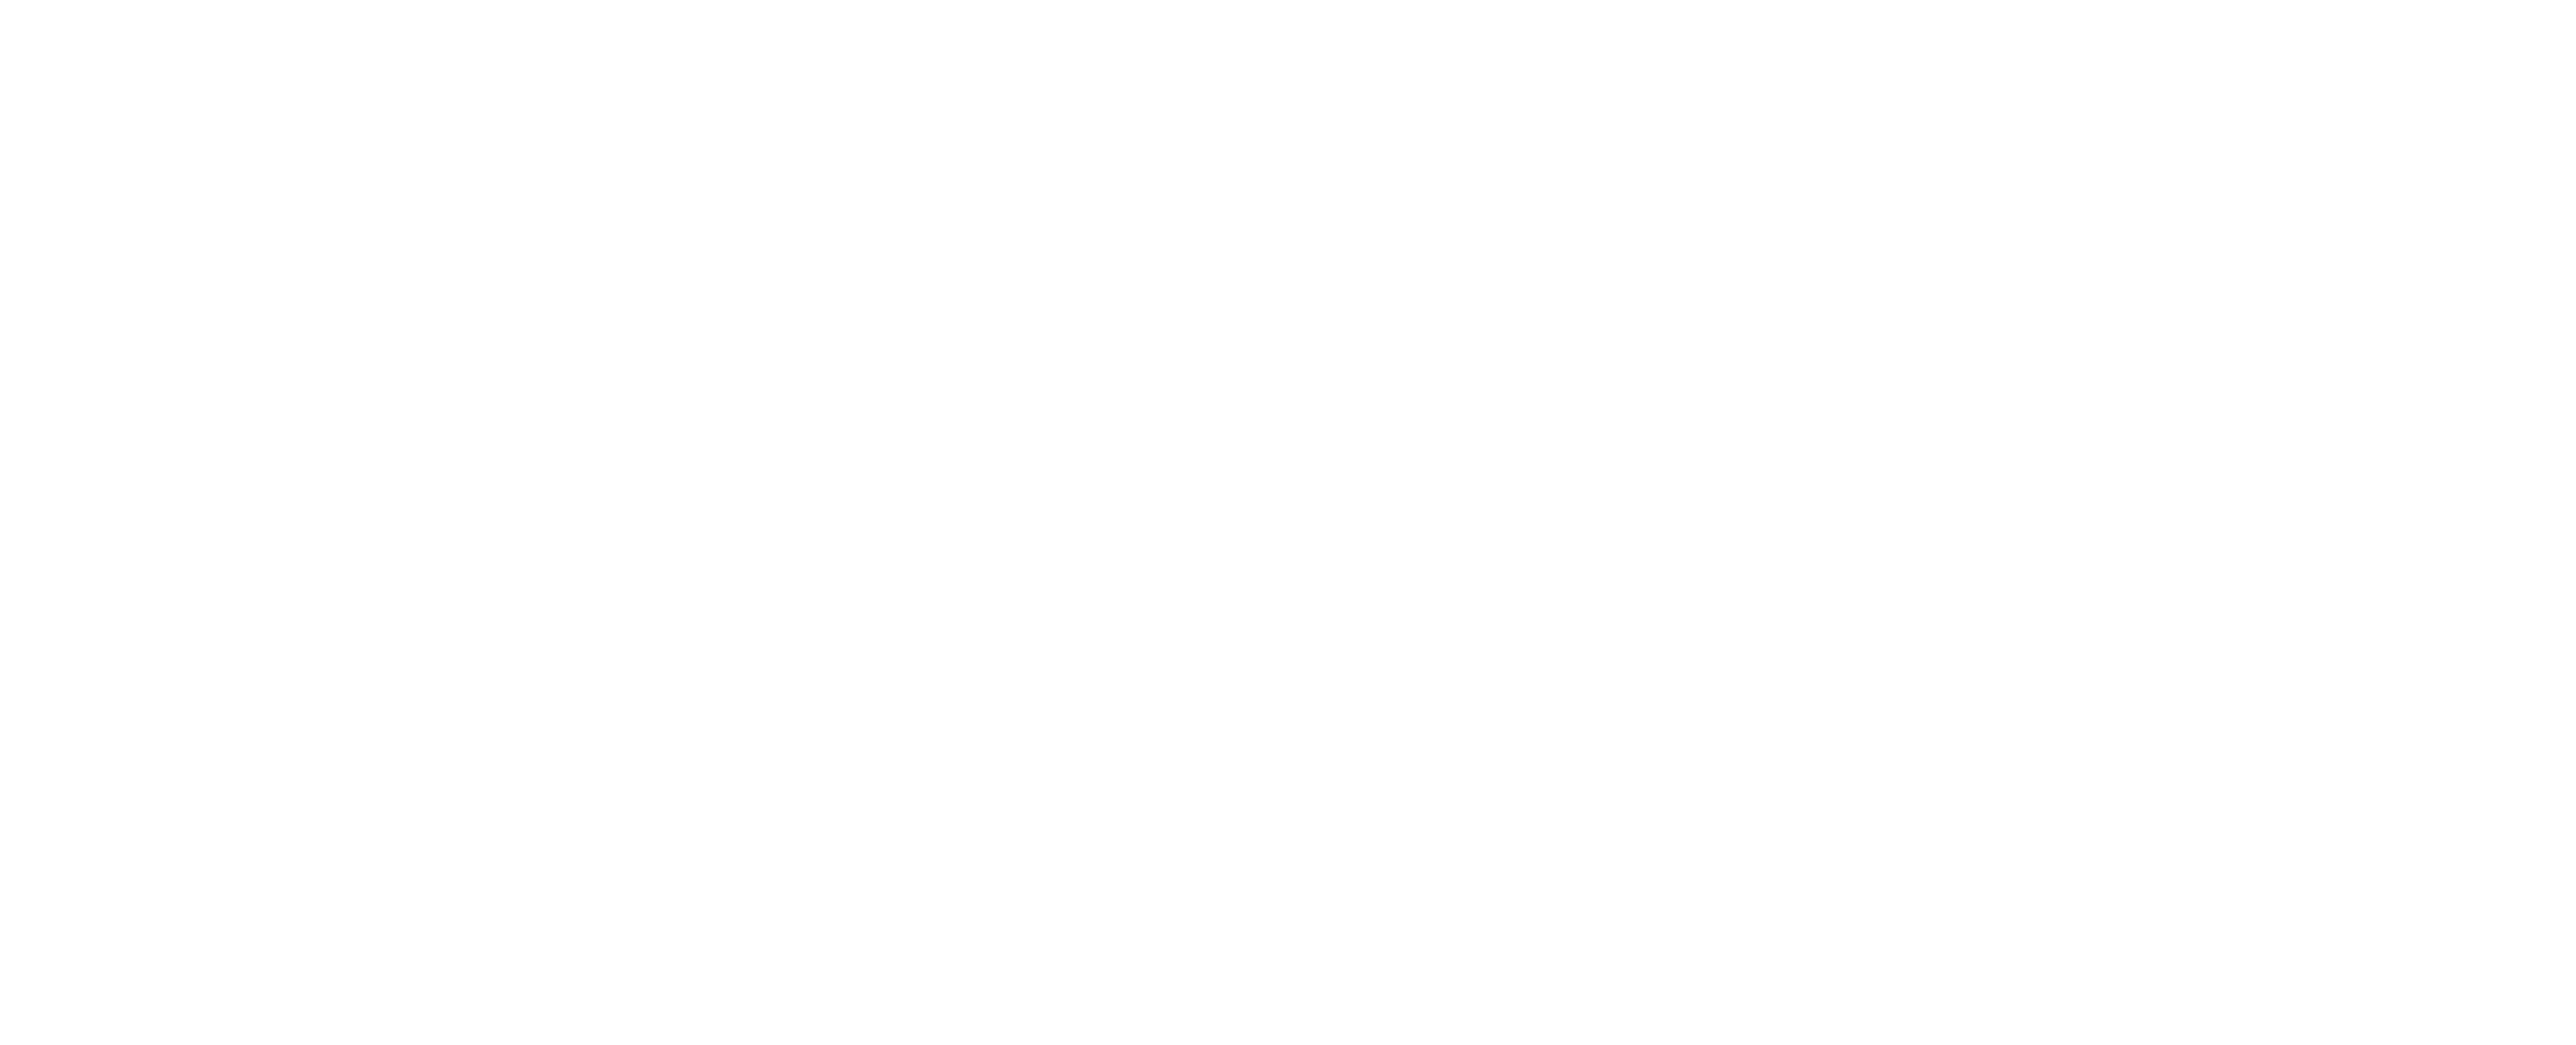 Christelle Firework logo